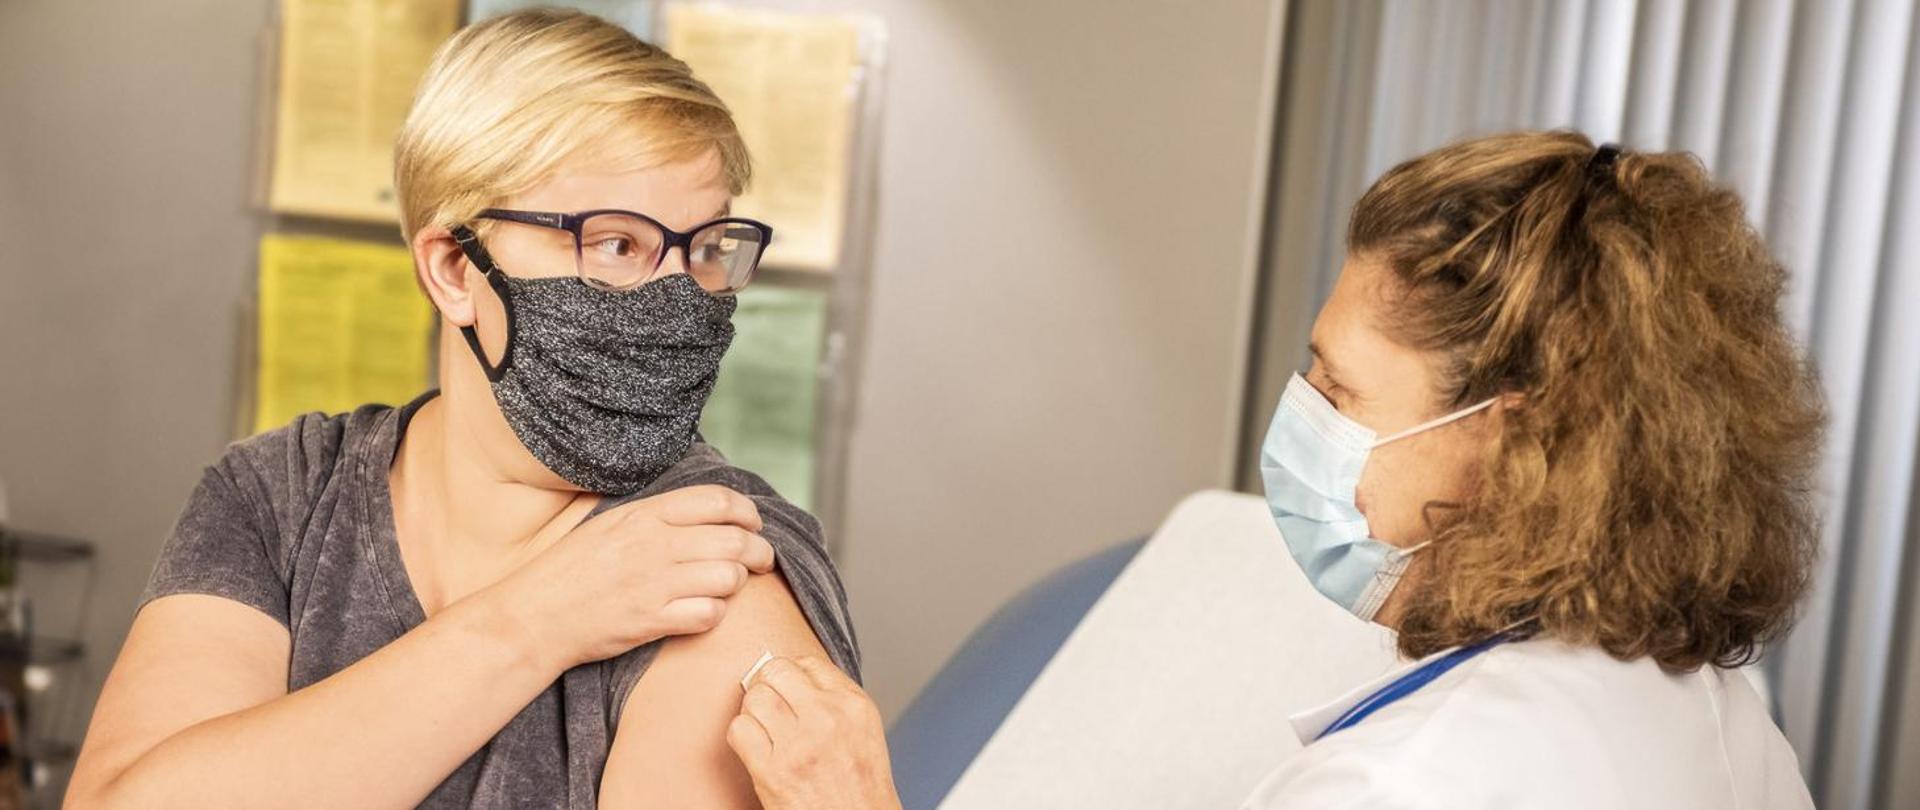 Dwie kobiety w maseczkach - pacjentka i pielęgniarka. Pacjentka podnosi rękaw w celu wykonania zabiegu szczepienia.